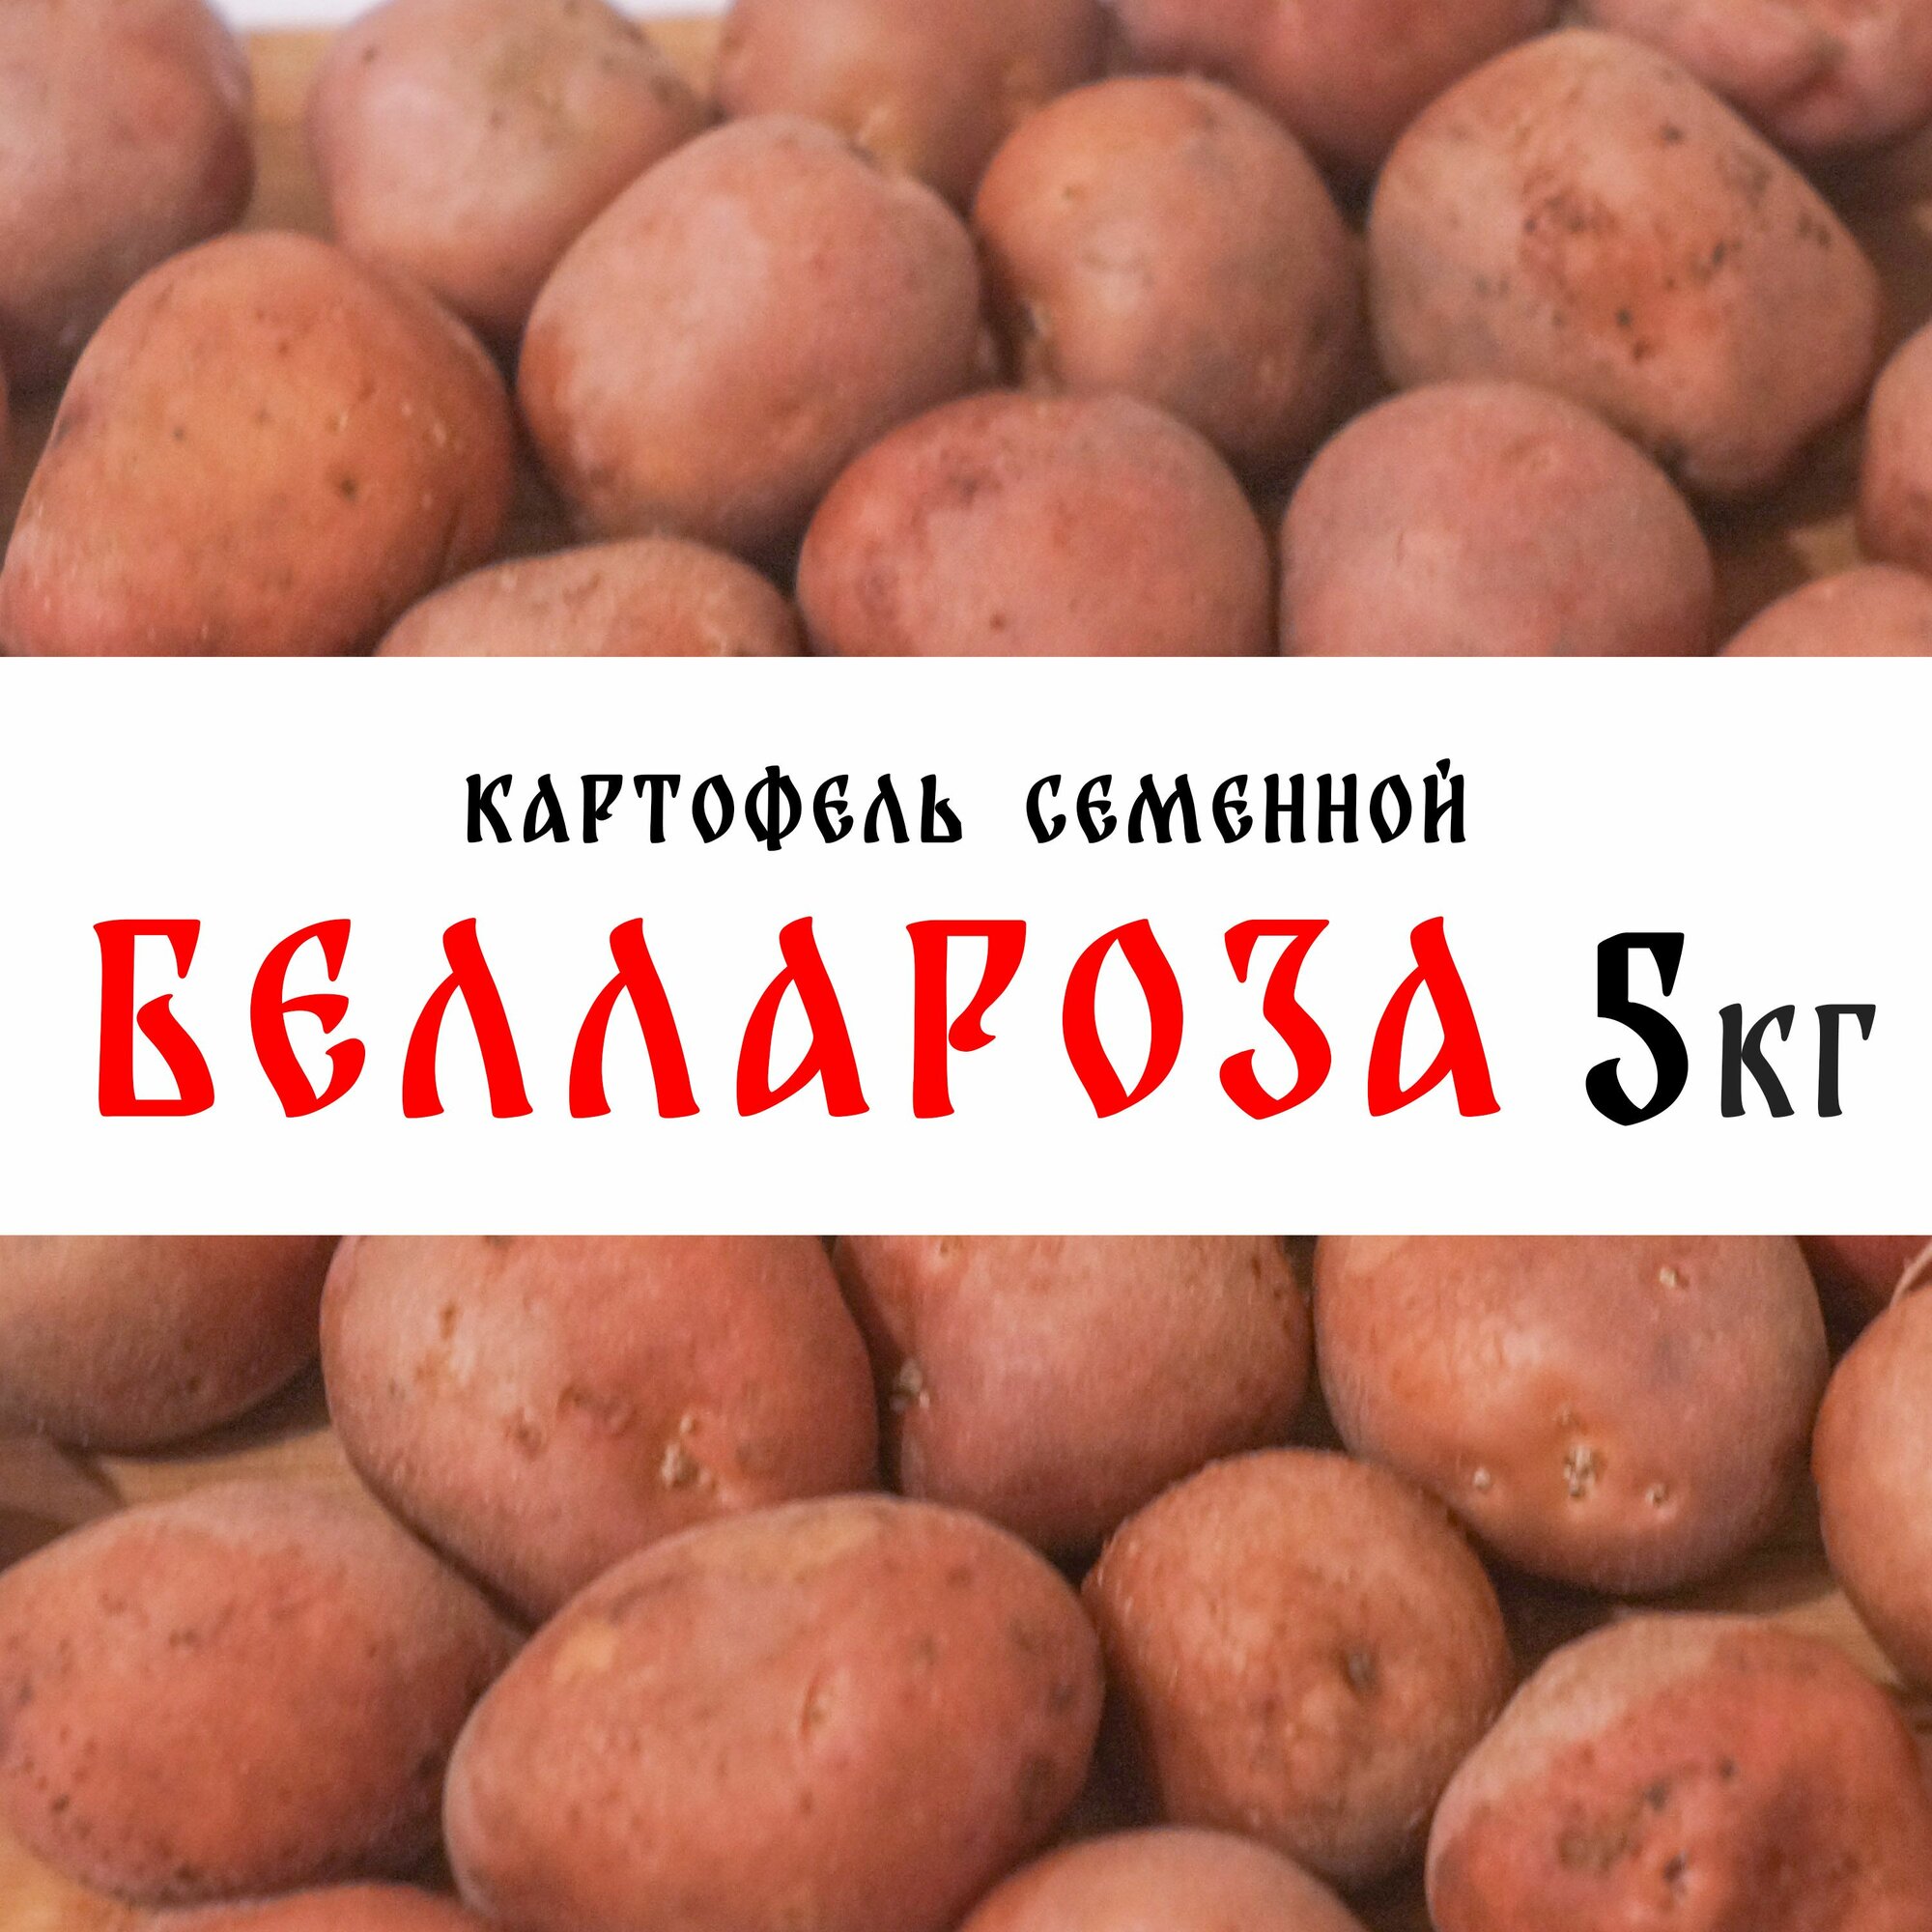 Семенной картофель сорта "Беллароза" 5кг, клубни, 1 репродукция